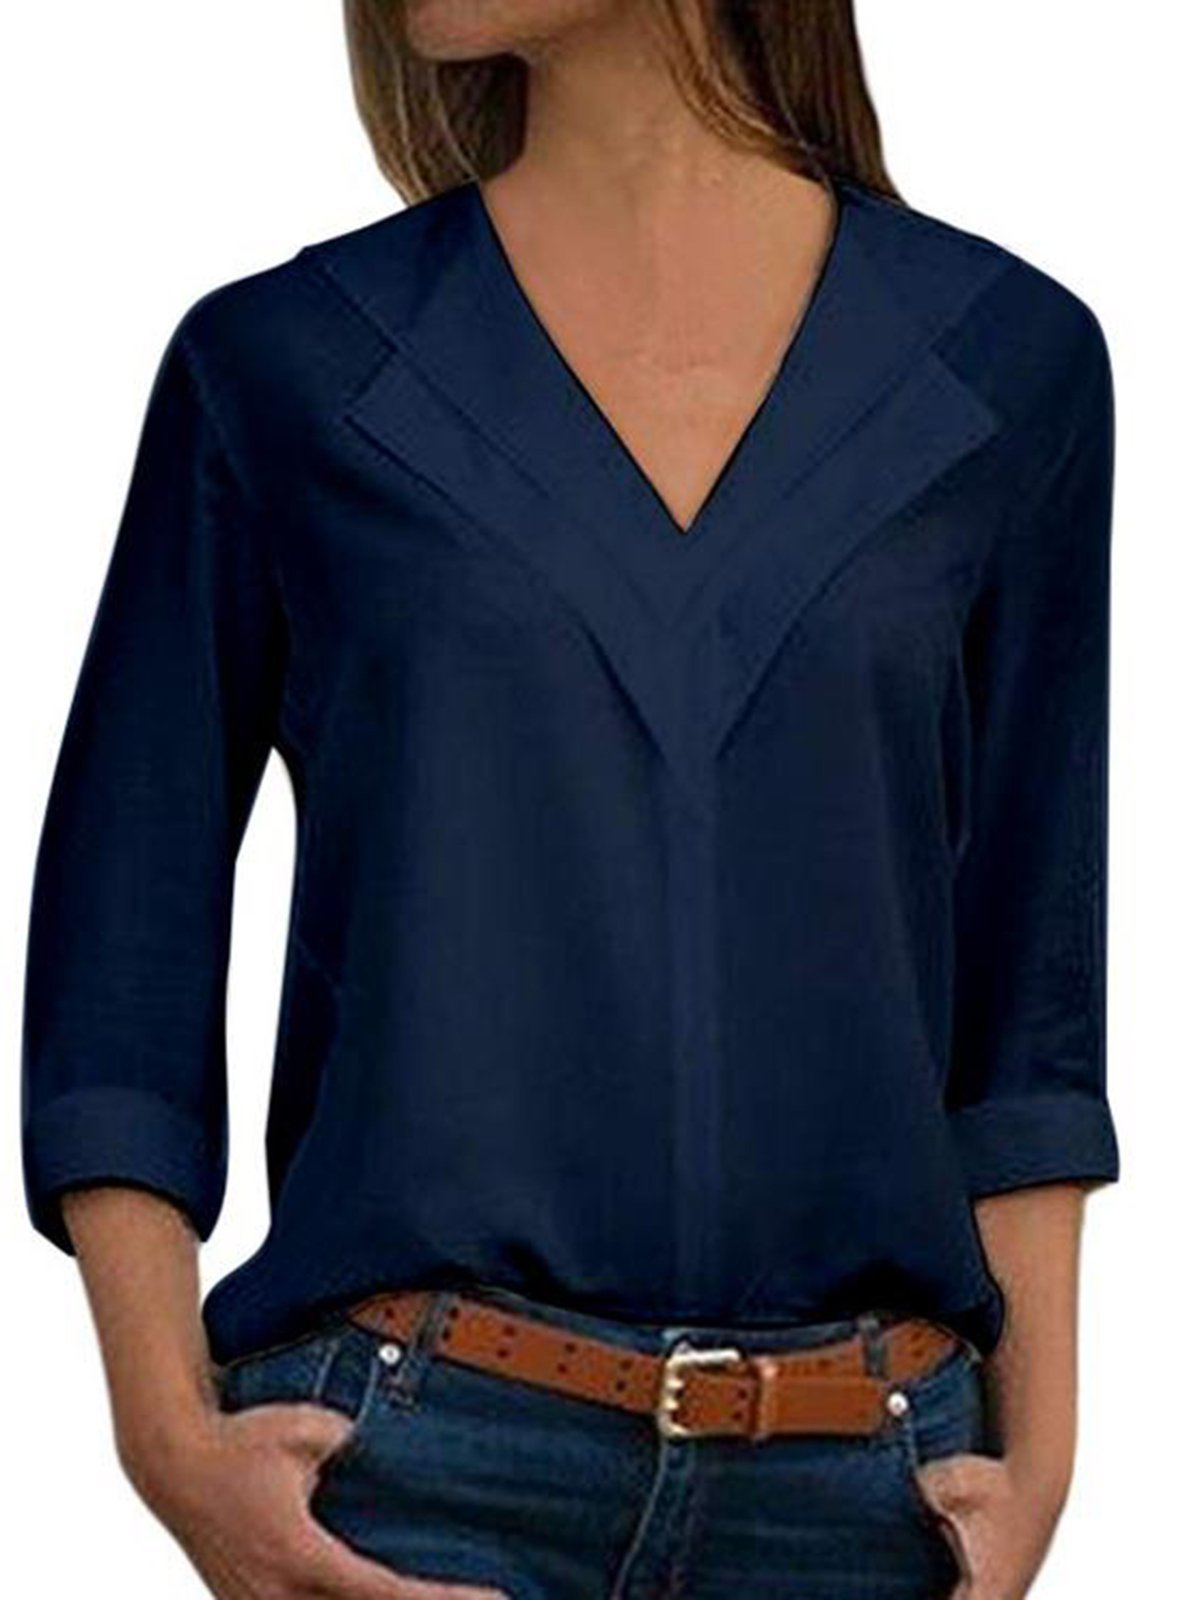 Unifarben Basic V-Ausschnitt-Bluse mit Langarm Große Größen Herbst